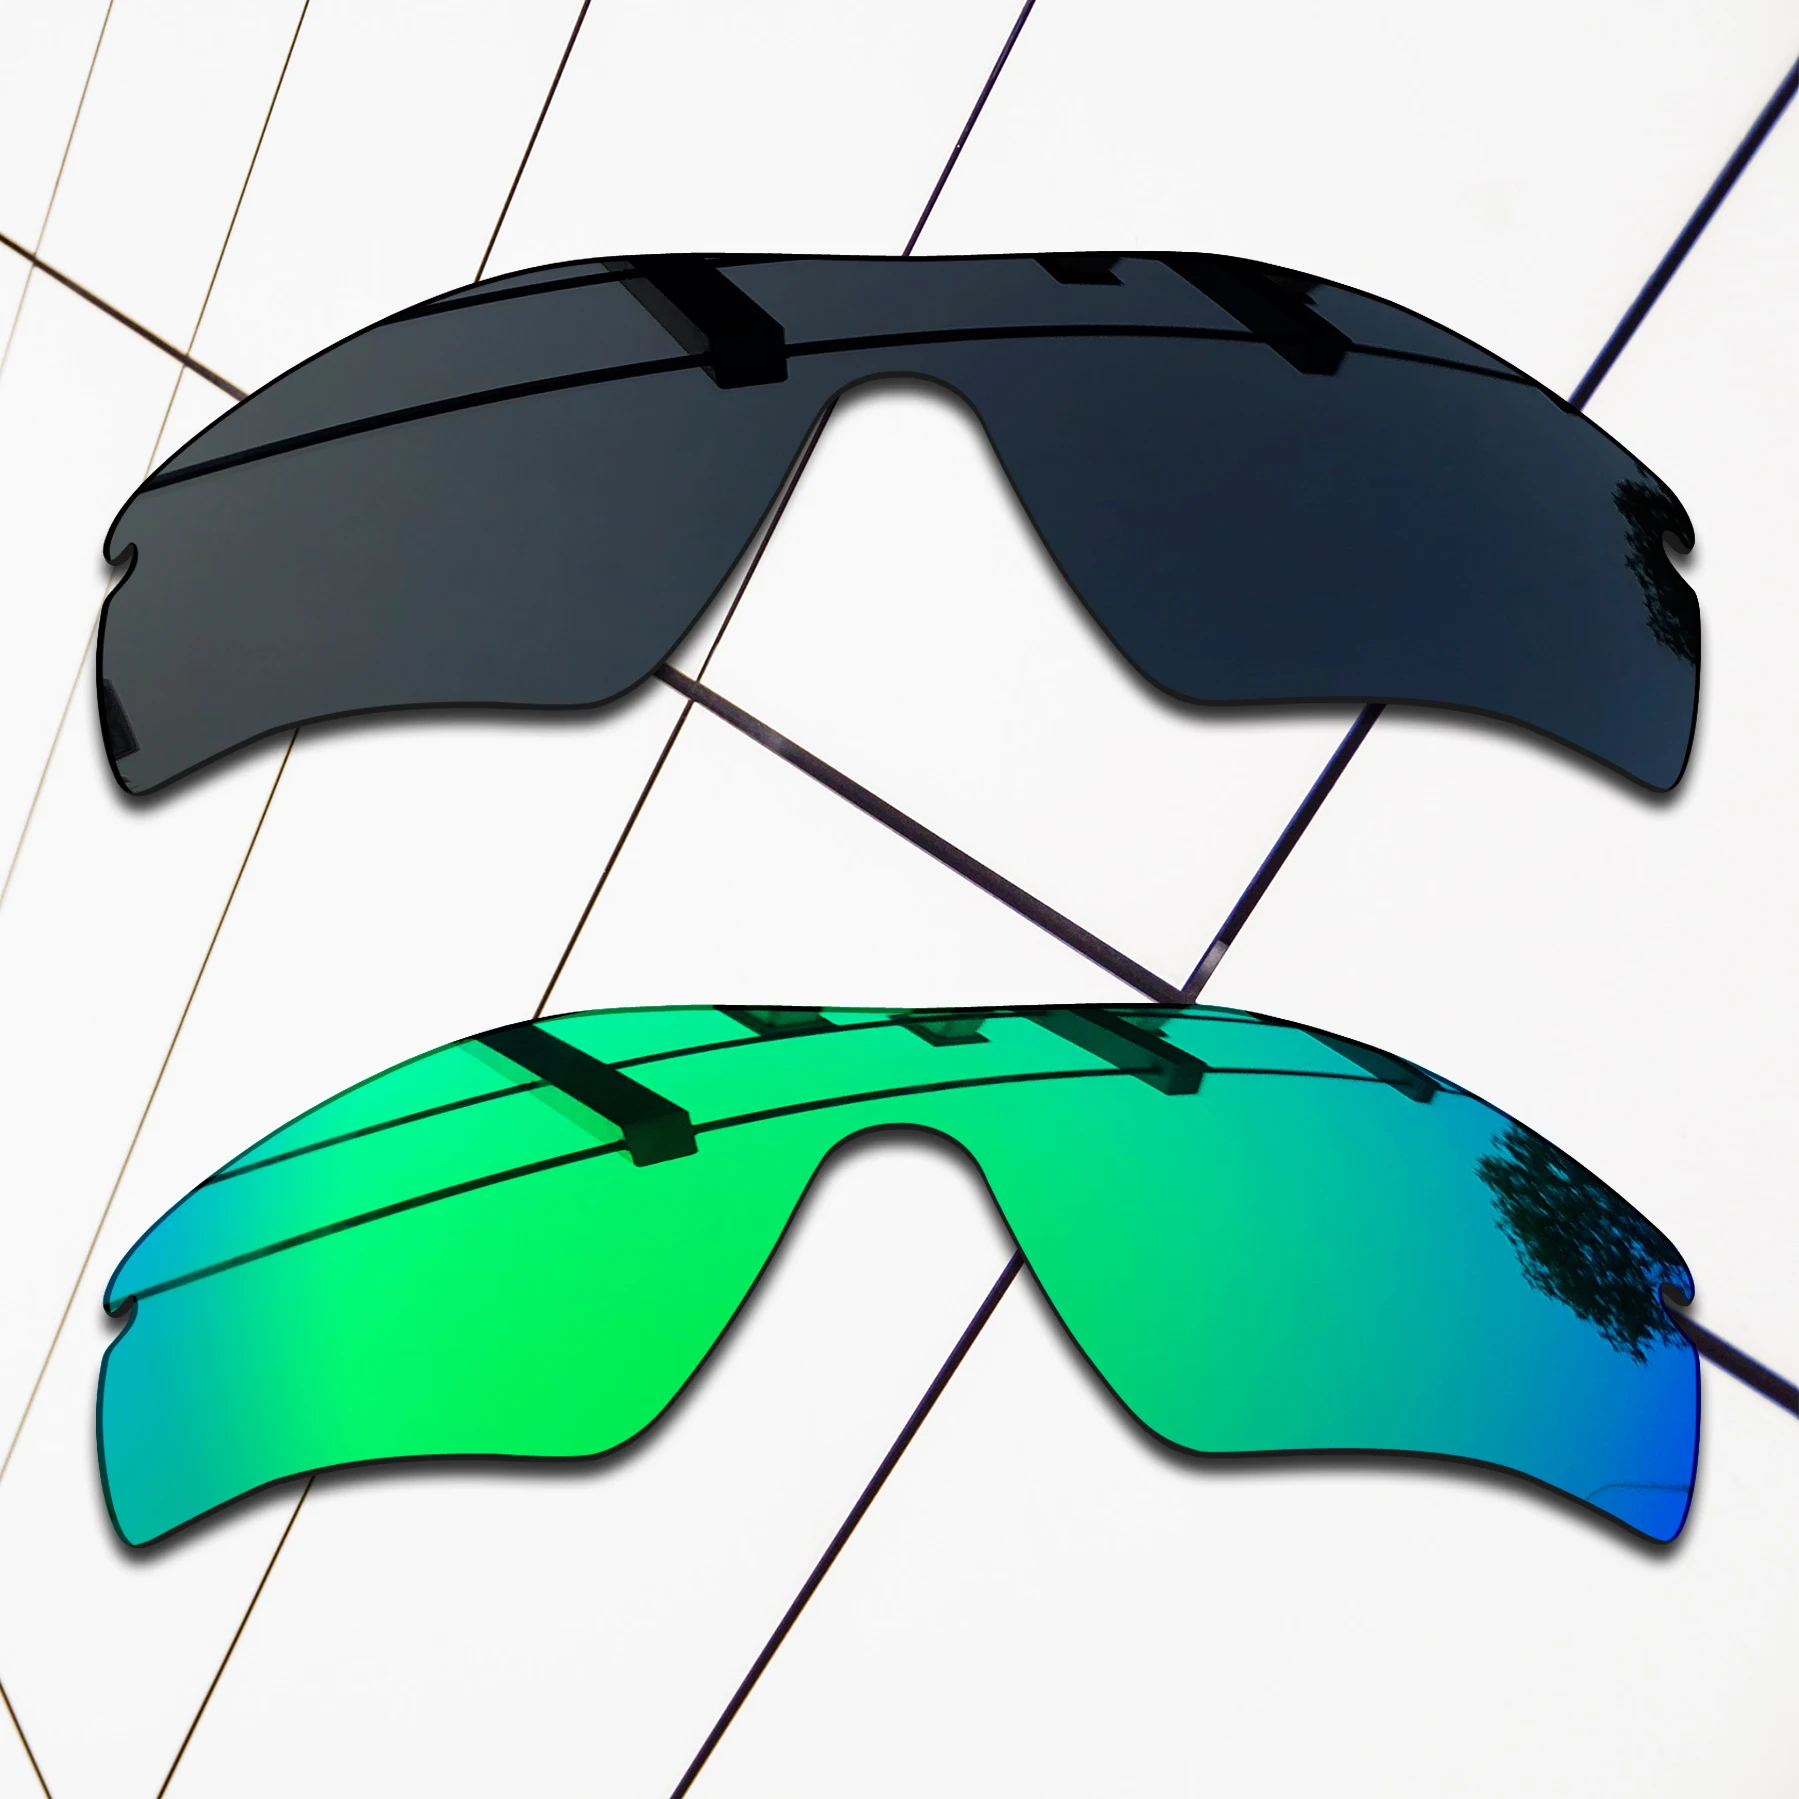 E.O.S-Lentes de repuesto polarizadas para gafas de sol, lentes de sol de color negro y verde esmeralda, lentes de sol de estilo vintage, OO9181, 2 piezas